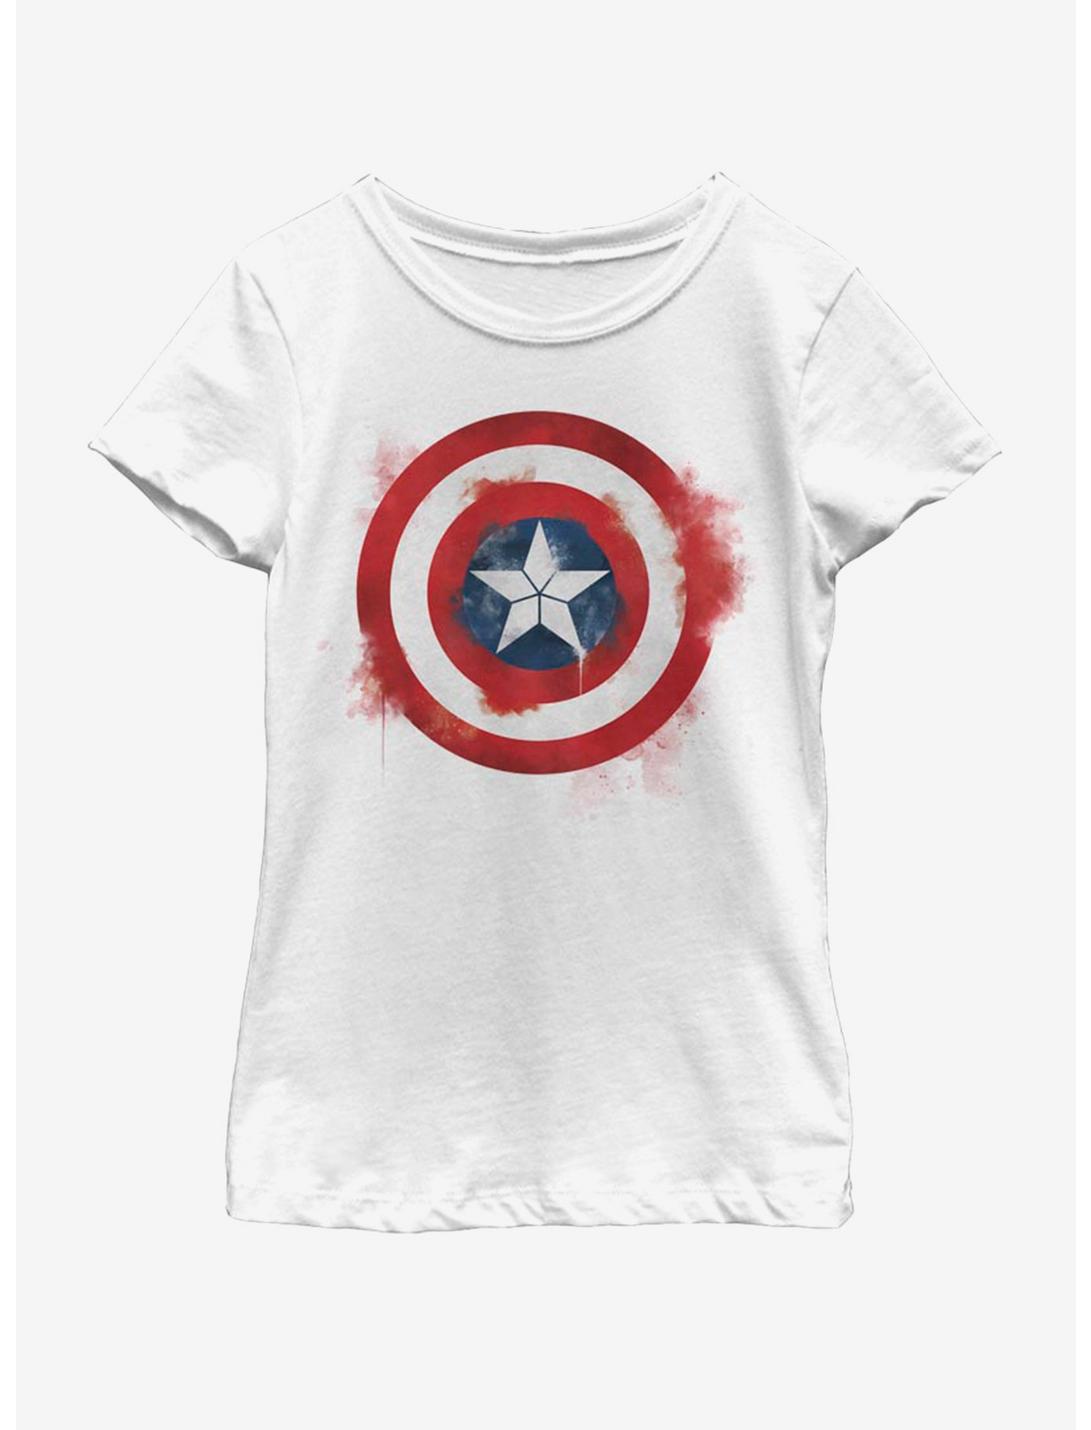 Marvel Avengers: Endgame Captain America Spray Logo Youth Girls T-Shirt, WHITE, hi-res